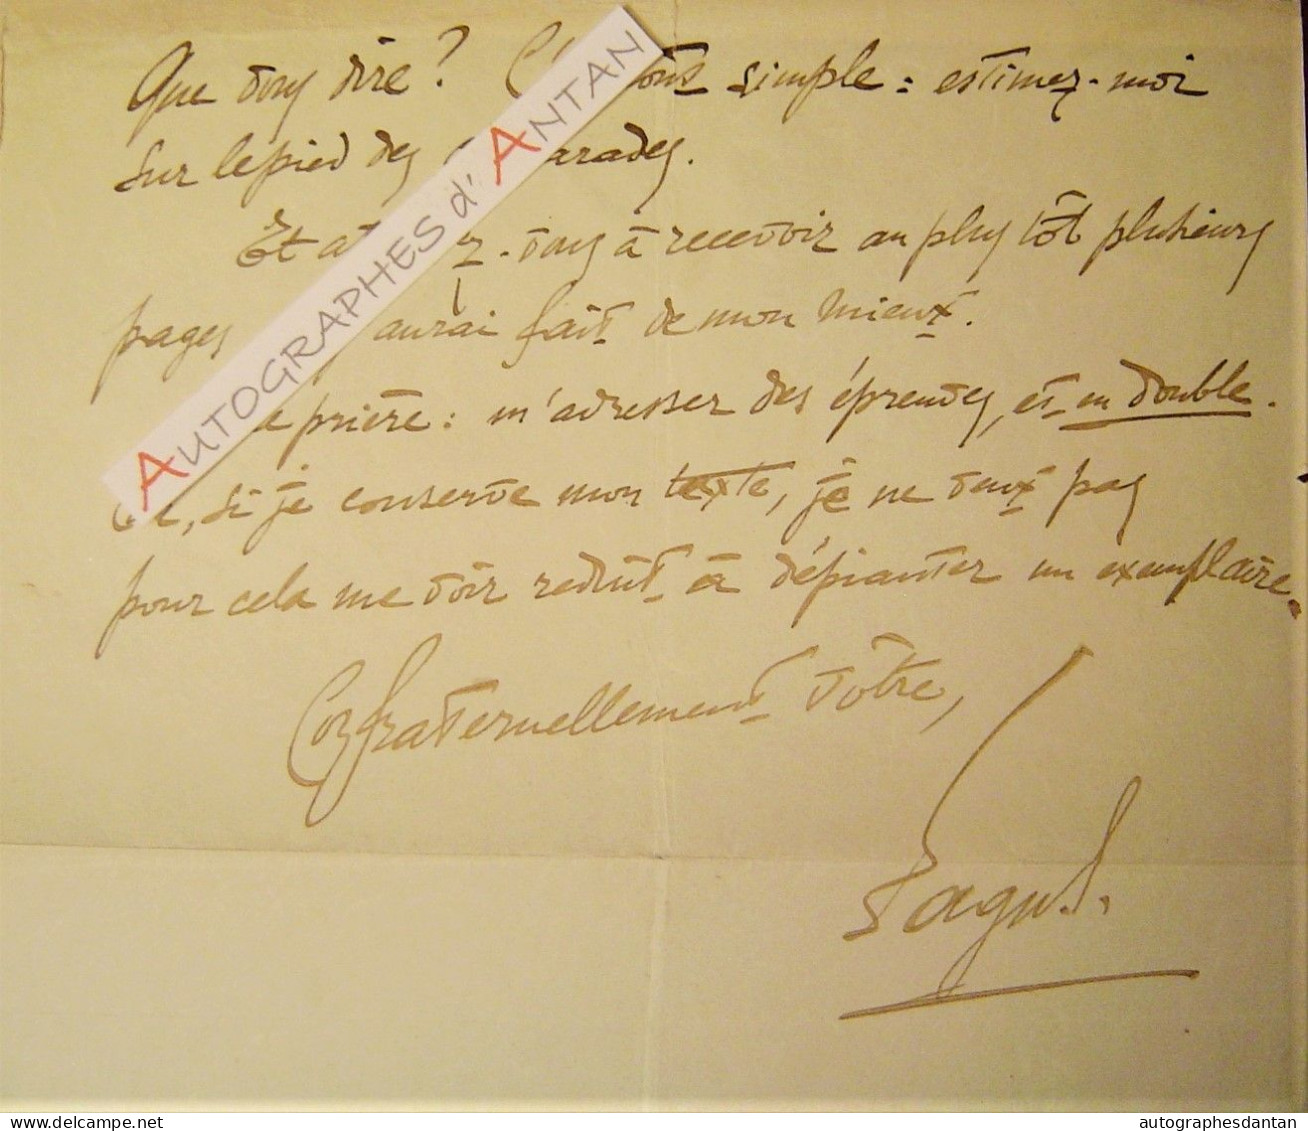 ● L.A.S 1927 FAGUS (Georges-Eugène FAILLET) Poète Ami De Jarry, Rodin - Lettre Autographe à Jean TENANT - Paul Claudel - Schrijvers